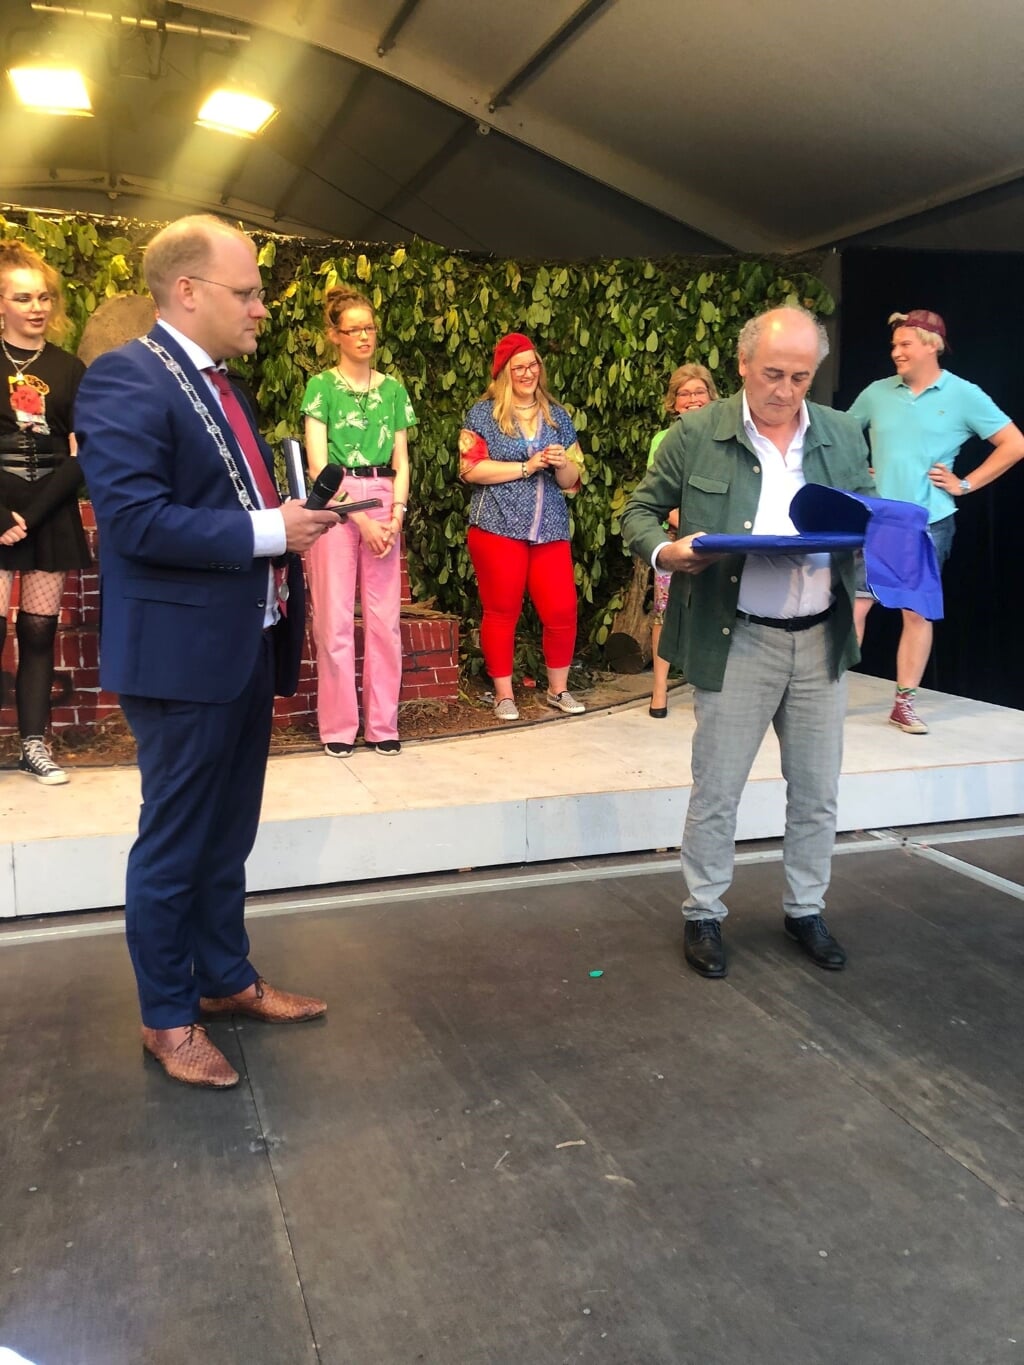 De burgemeester reikt de Koninklijke erepenning uit. Foto: PR gemeente Winterswijk